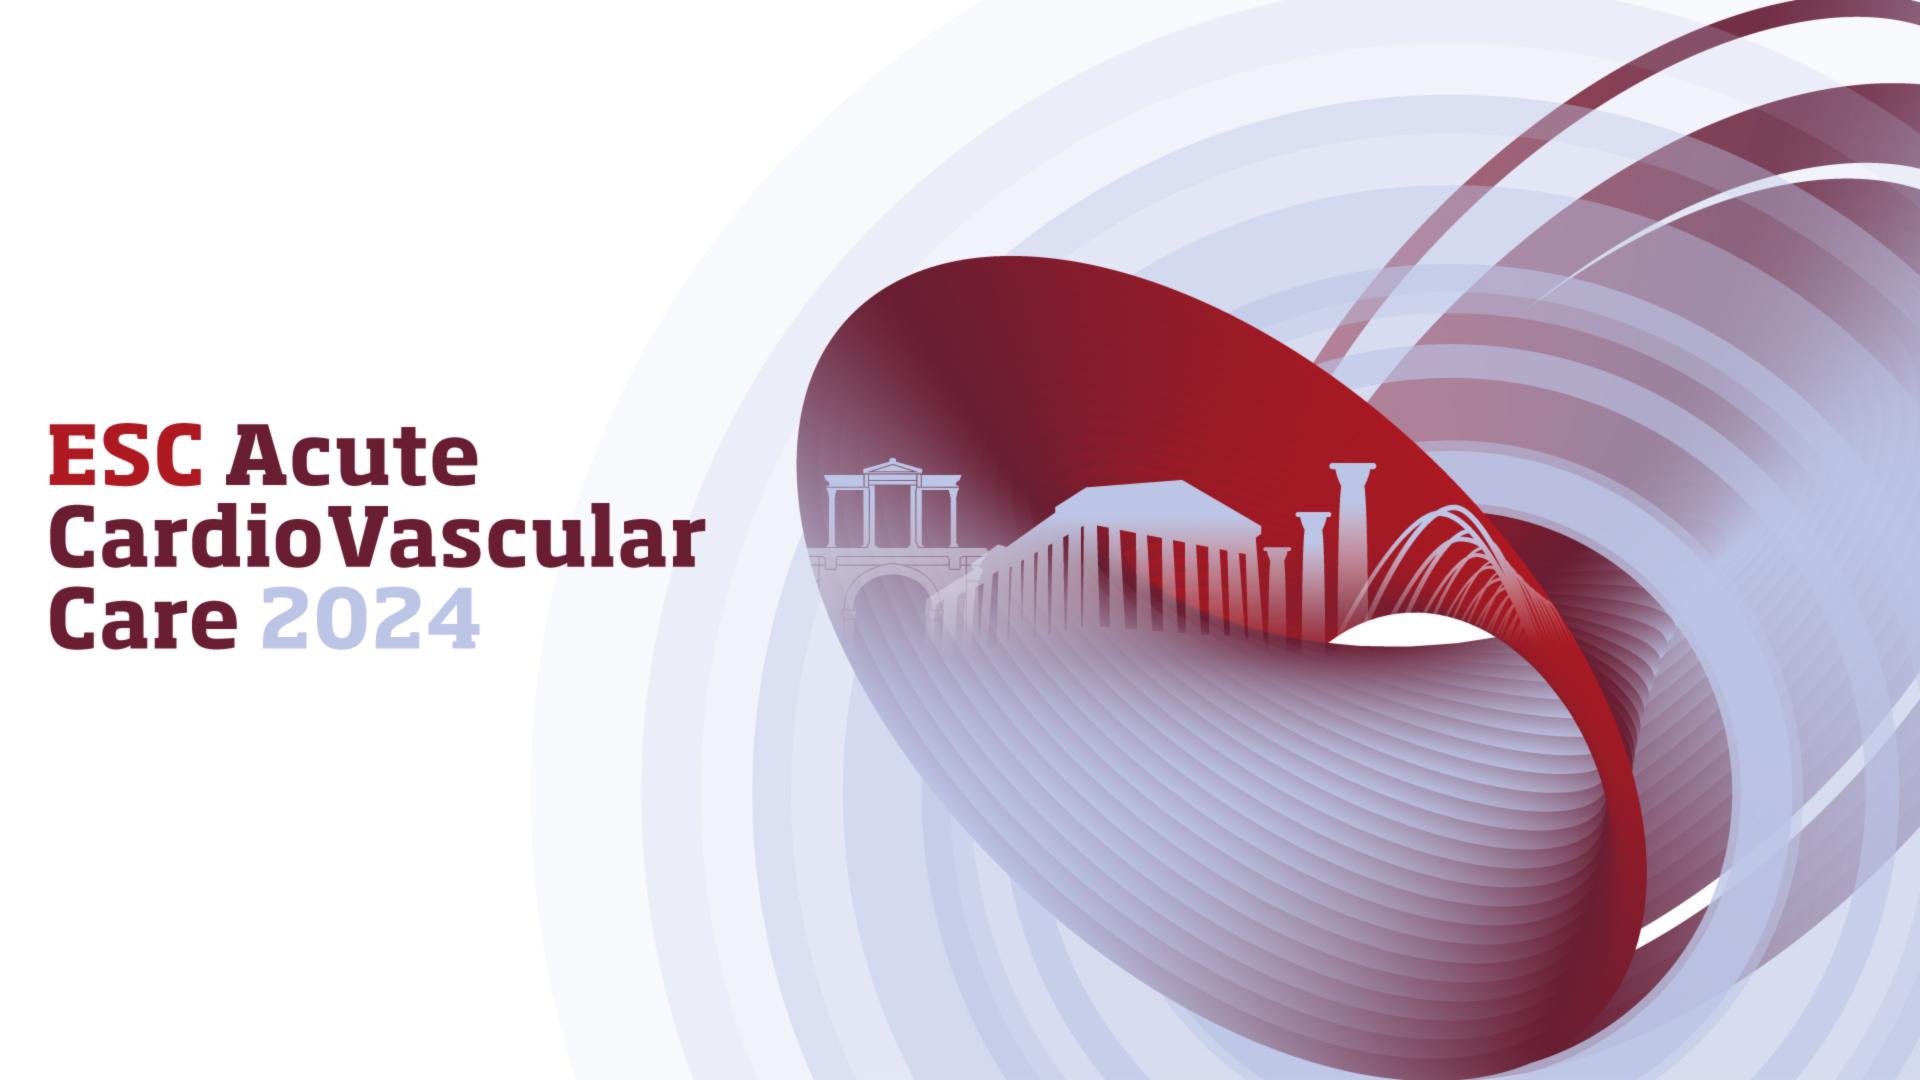 ESC Acute CardioVascular Care 2024